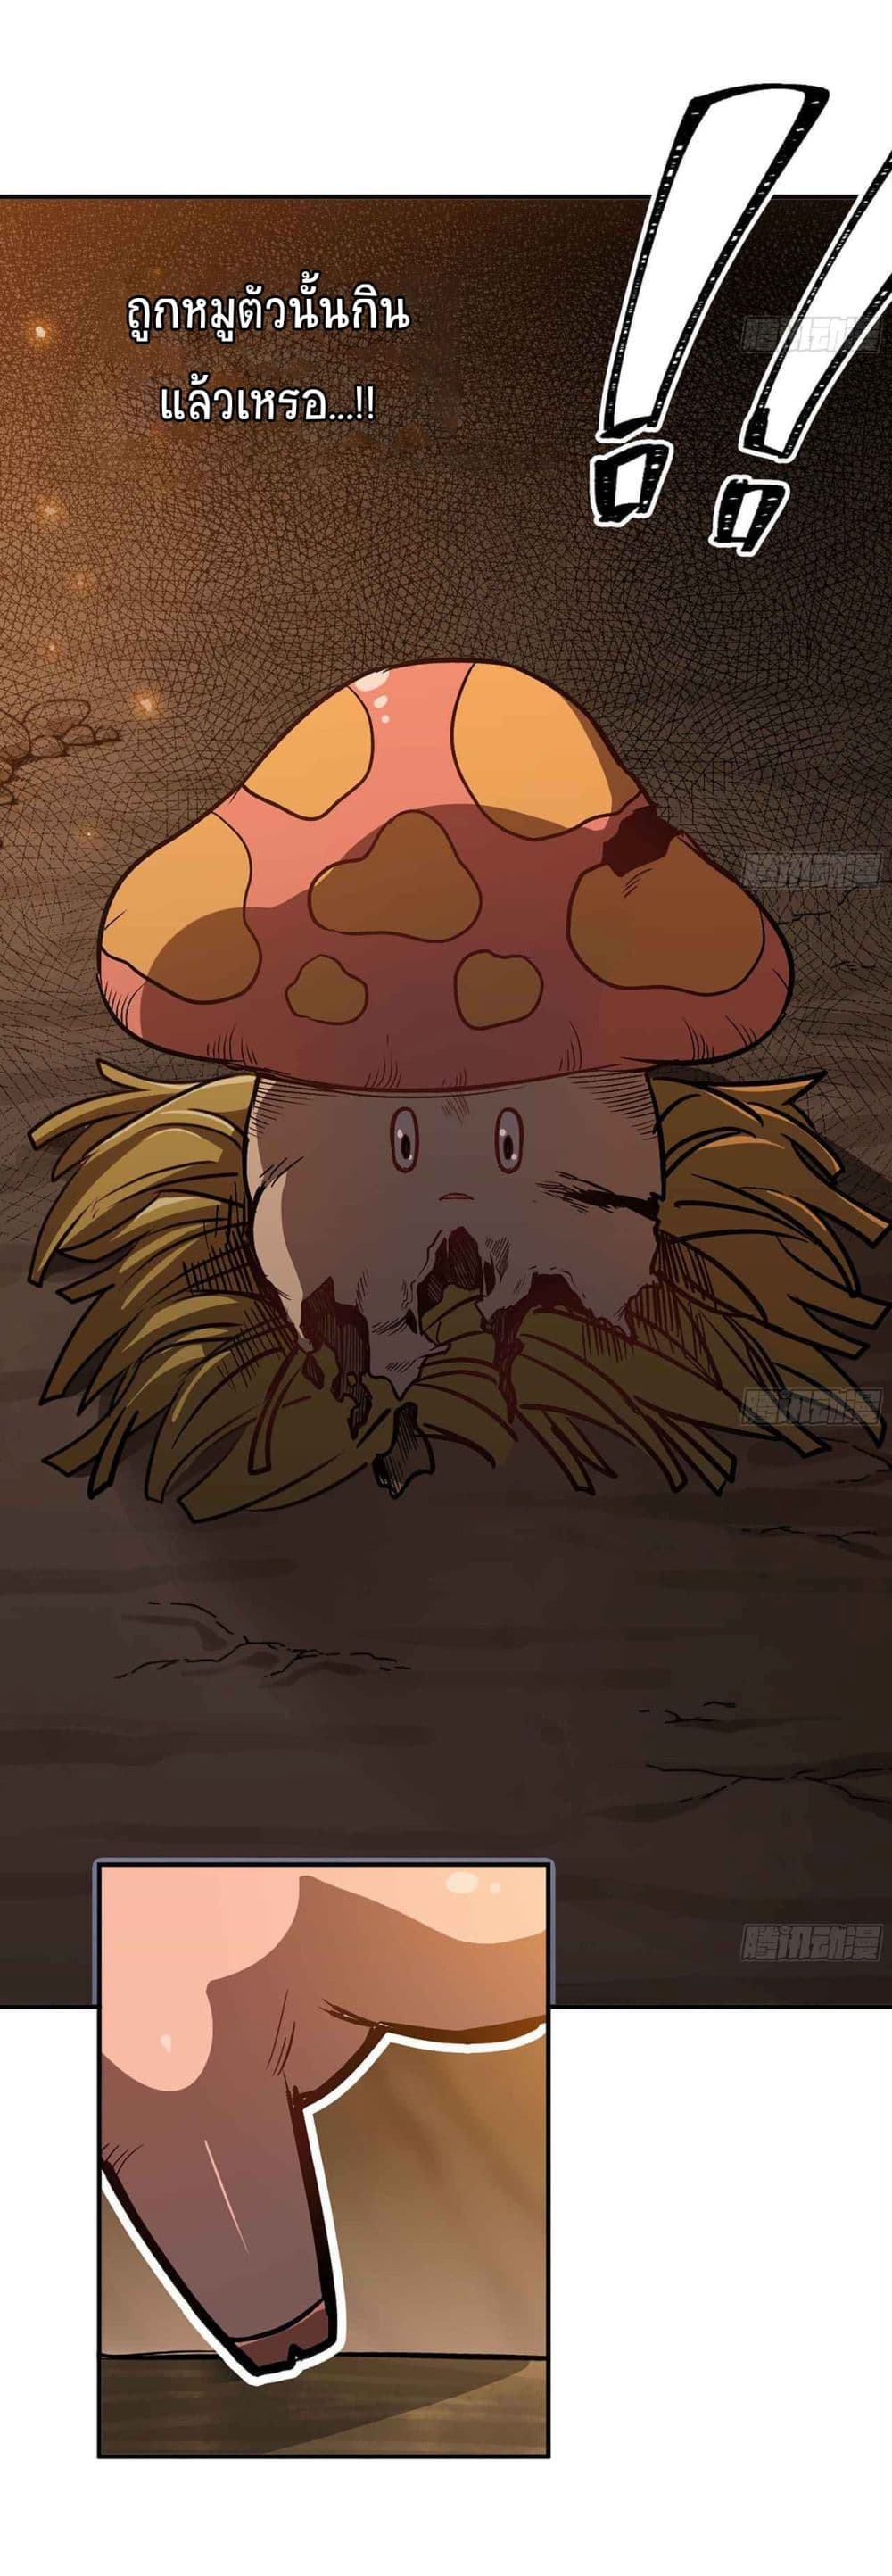 Mushroom Brave 9 (13)